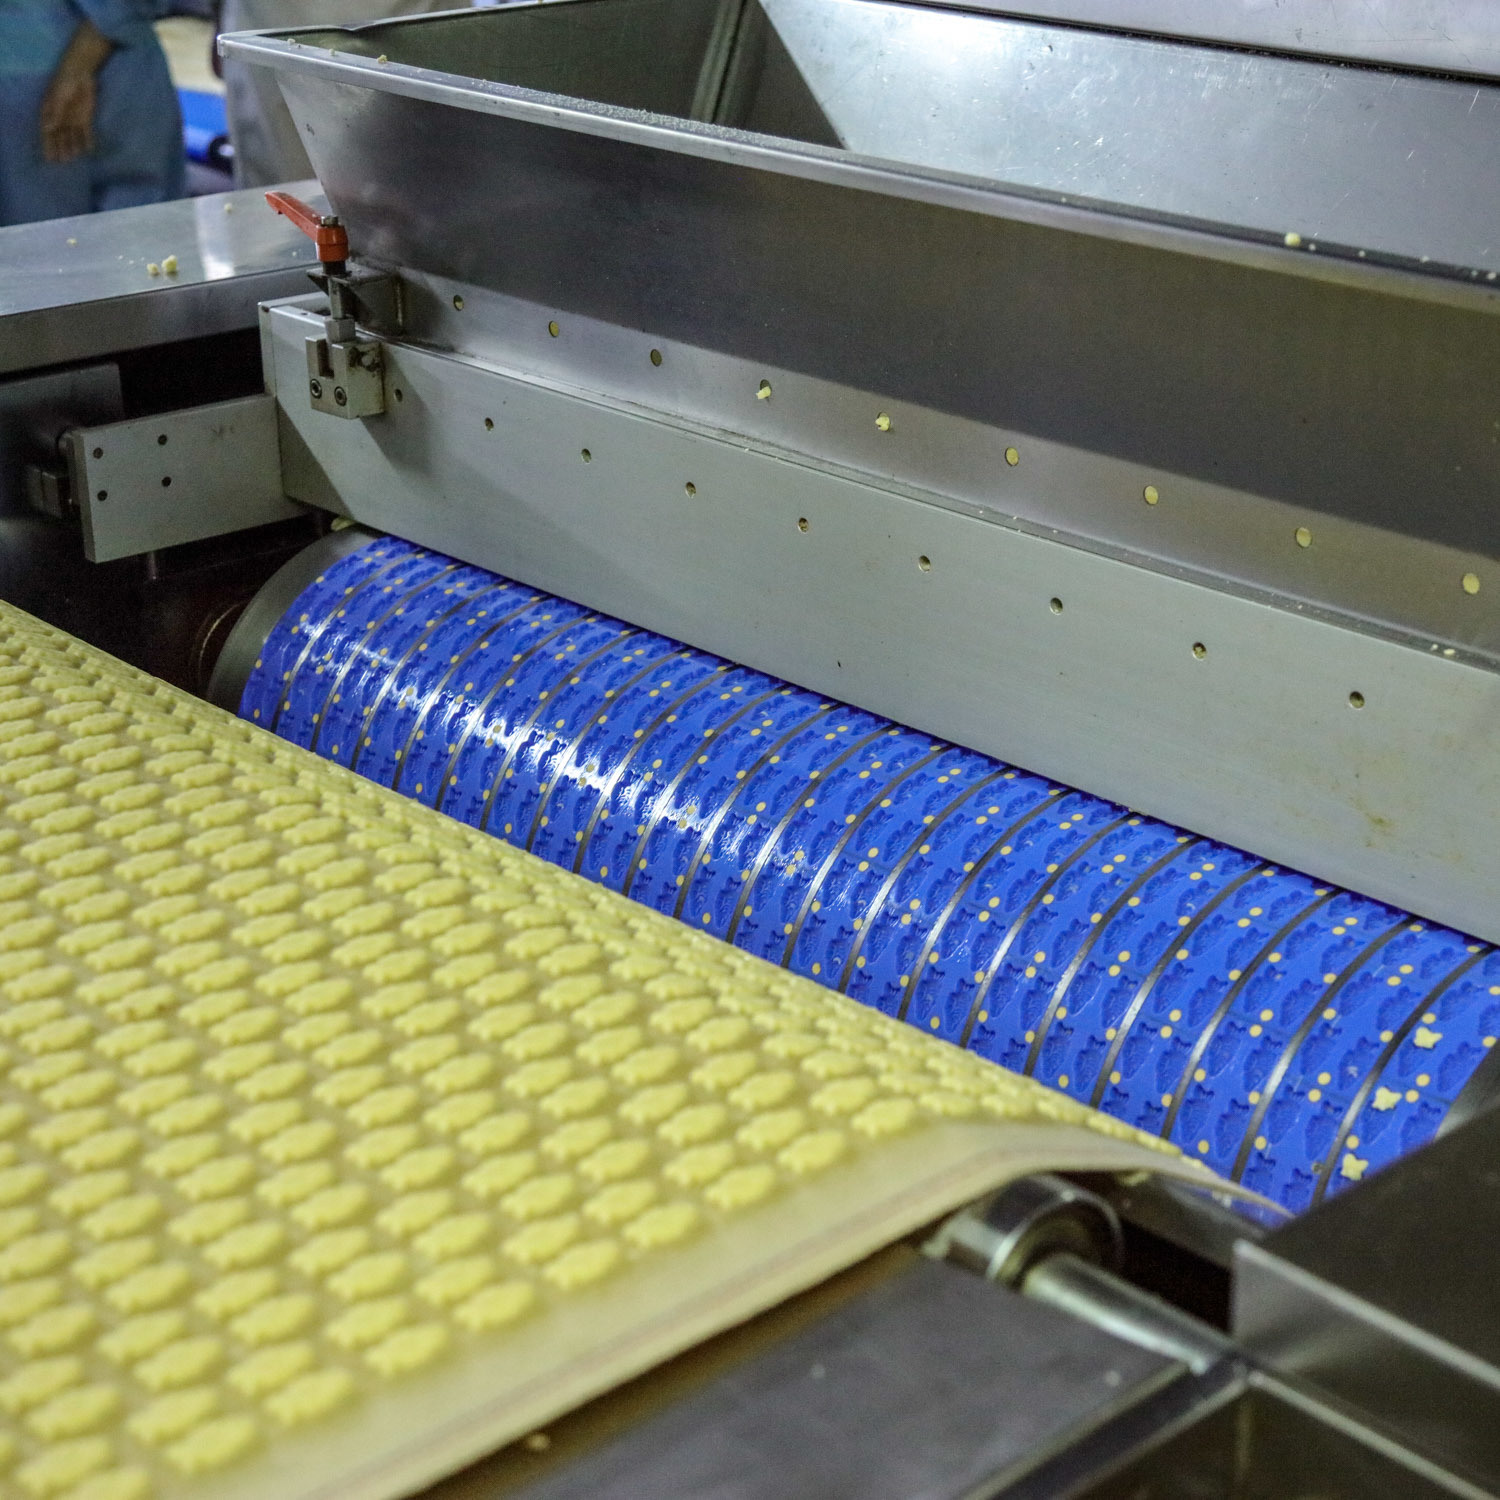 Máquina de fabricación de galletas suaves rotativos